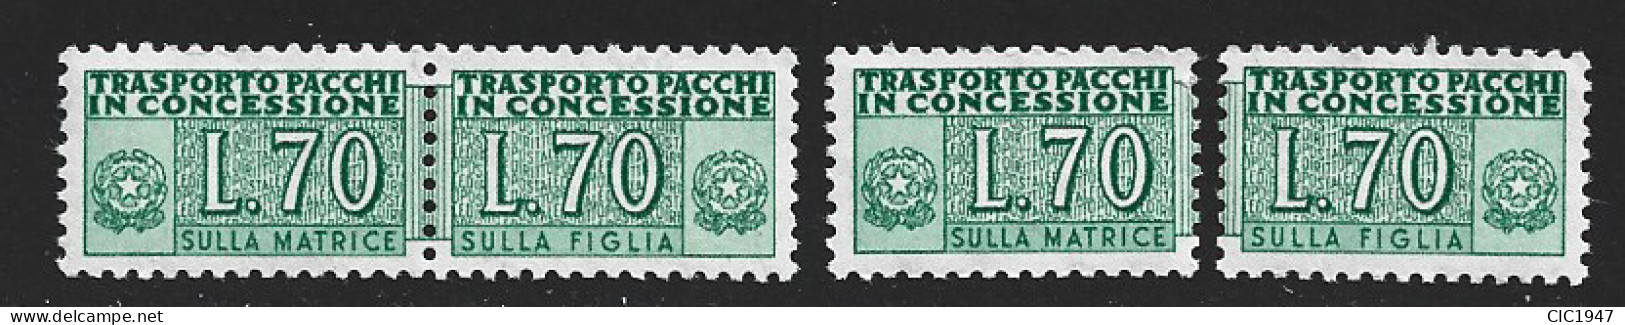 Italia Repubblica Serie Pacchi In Concessione Il 70 Lire Intero + Figlia E Matrice Nuovi Mnh** - Pacchi In Concessione